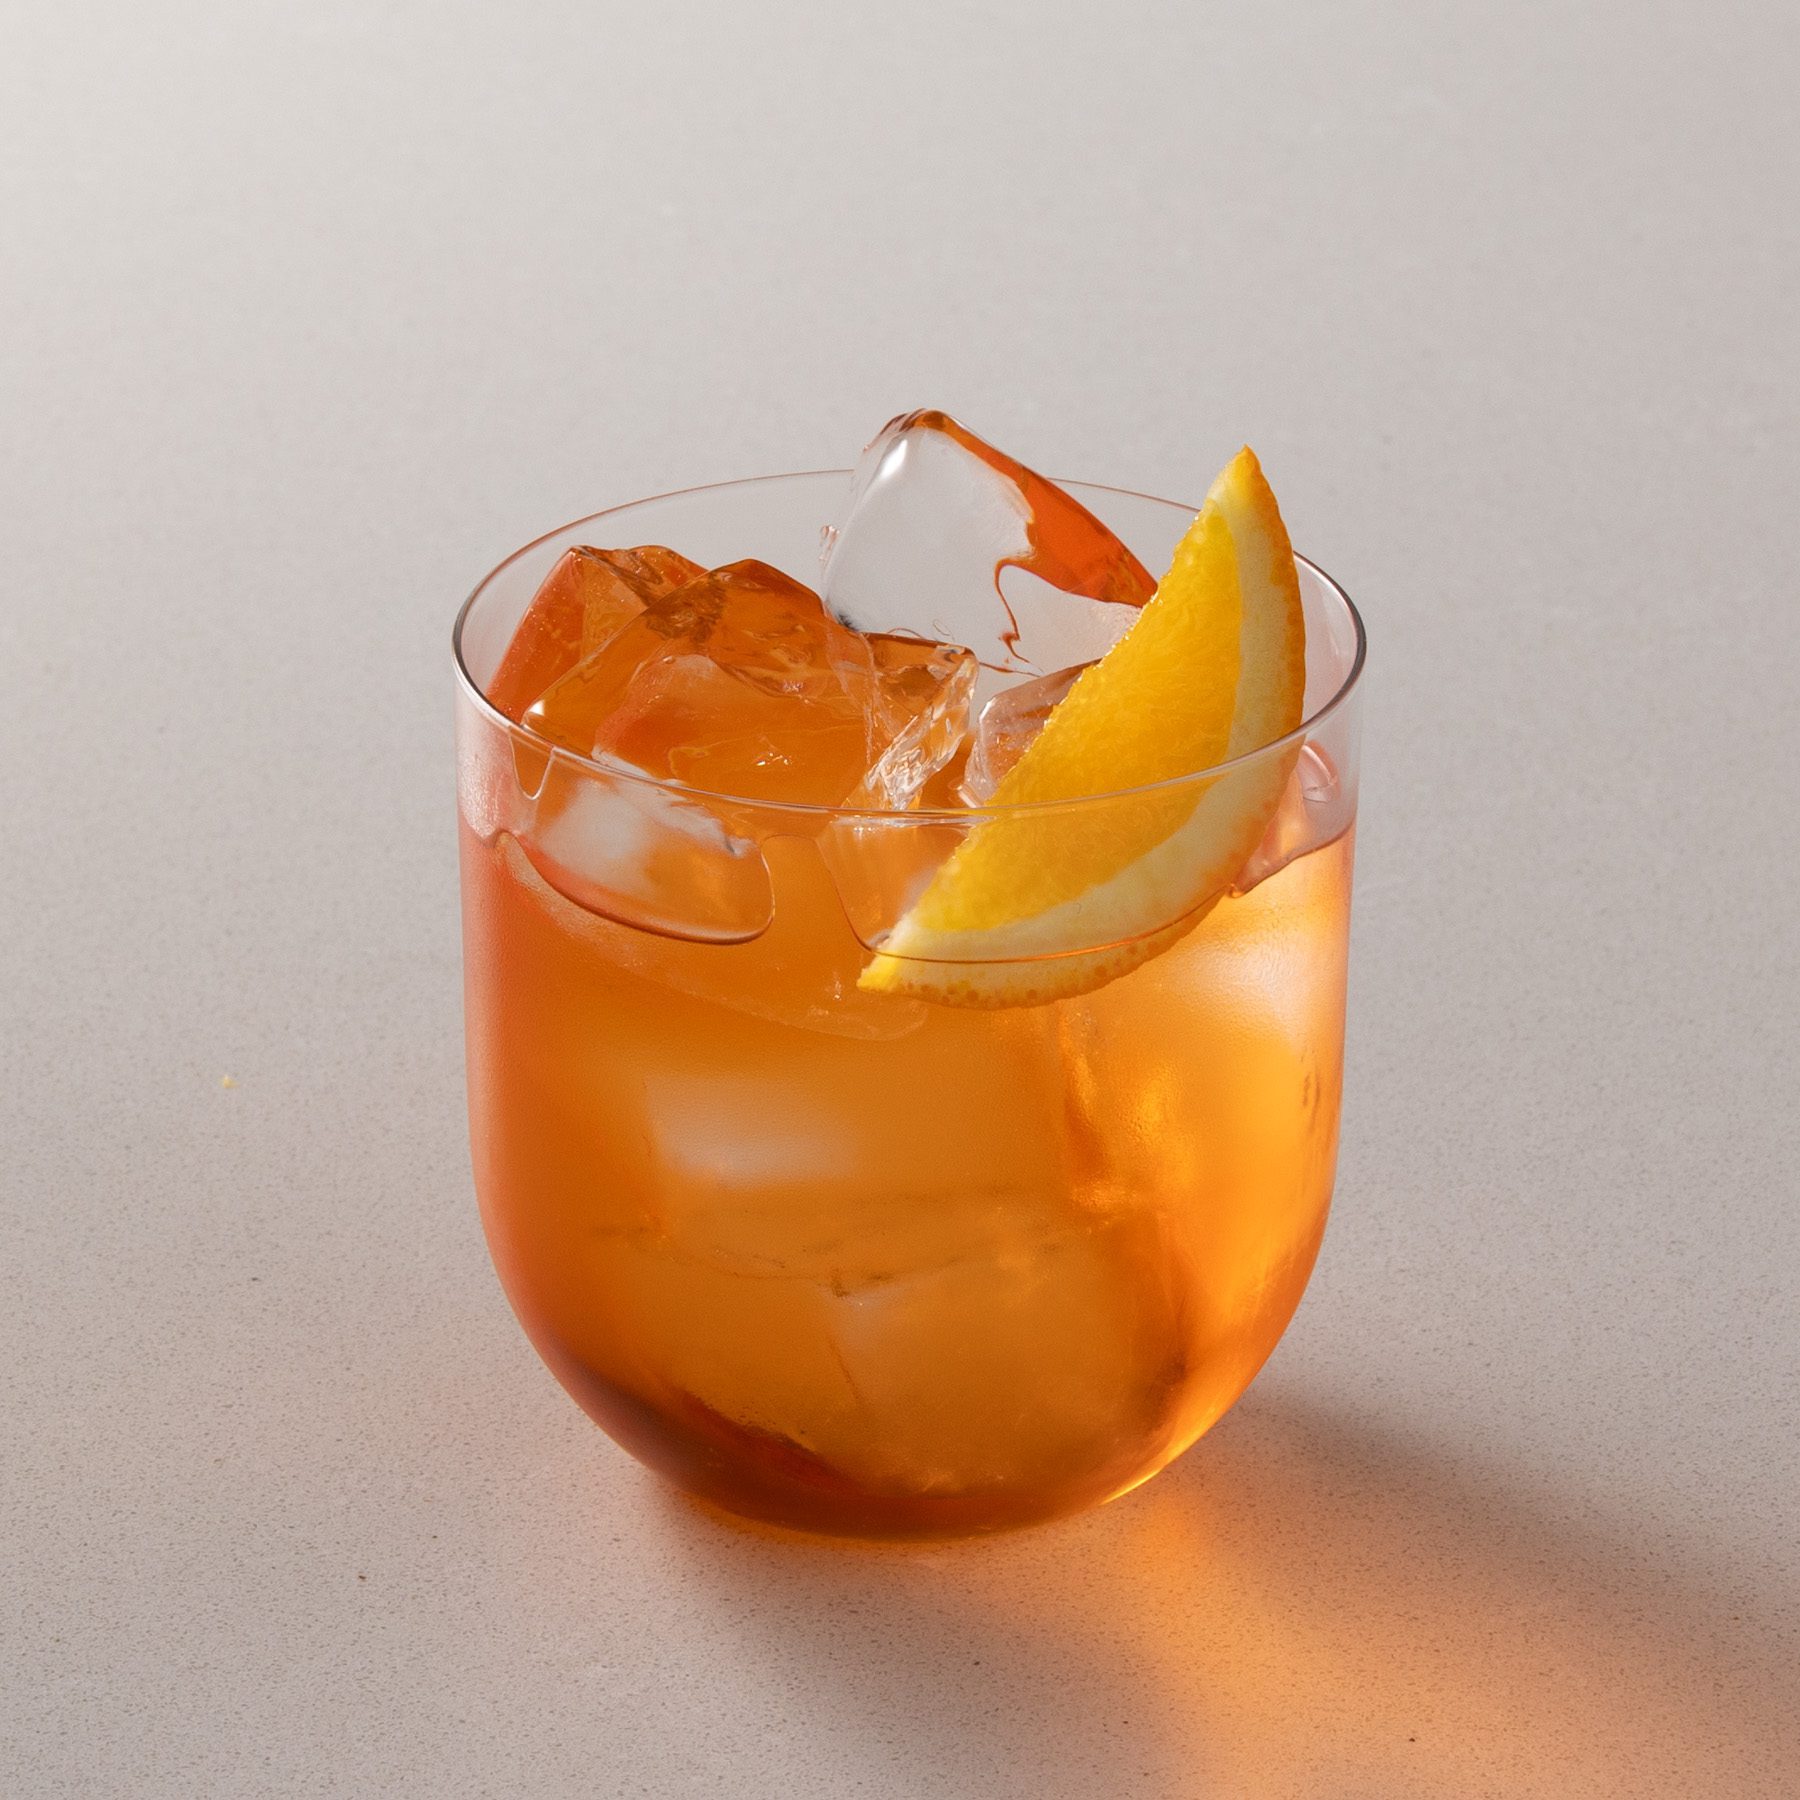 Spritz cocktail